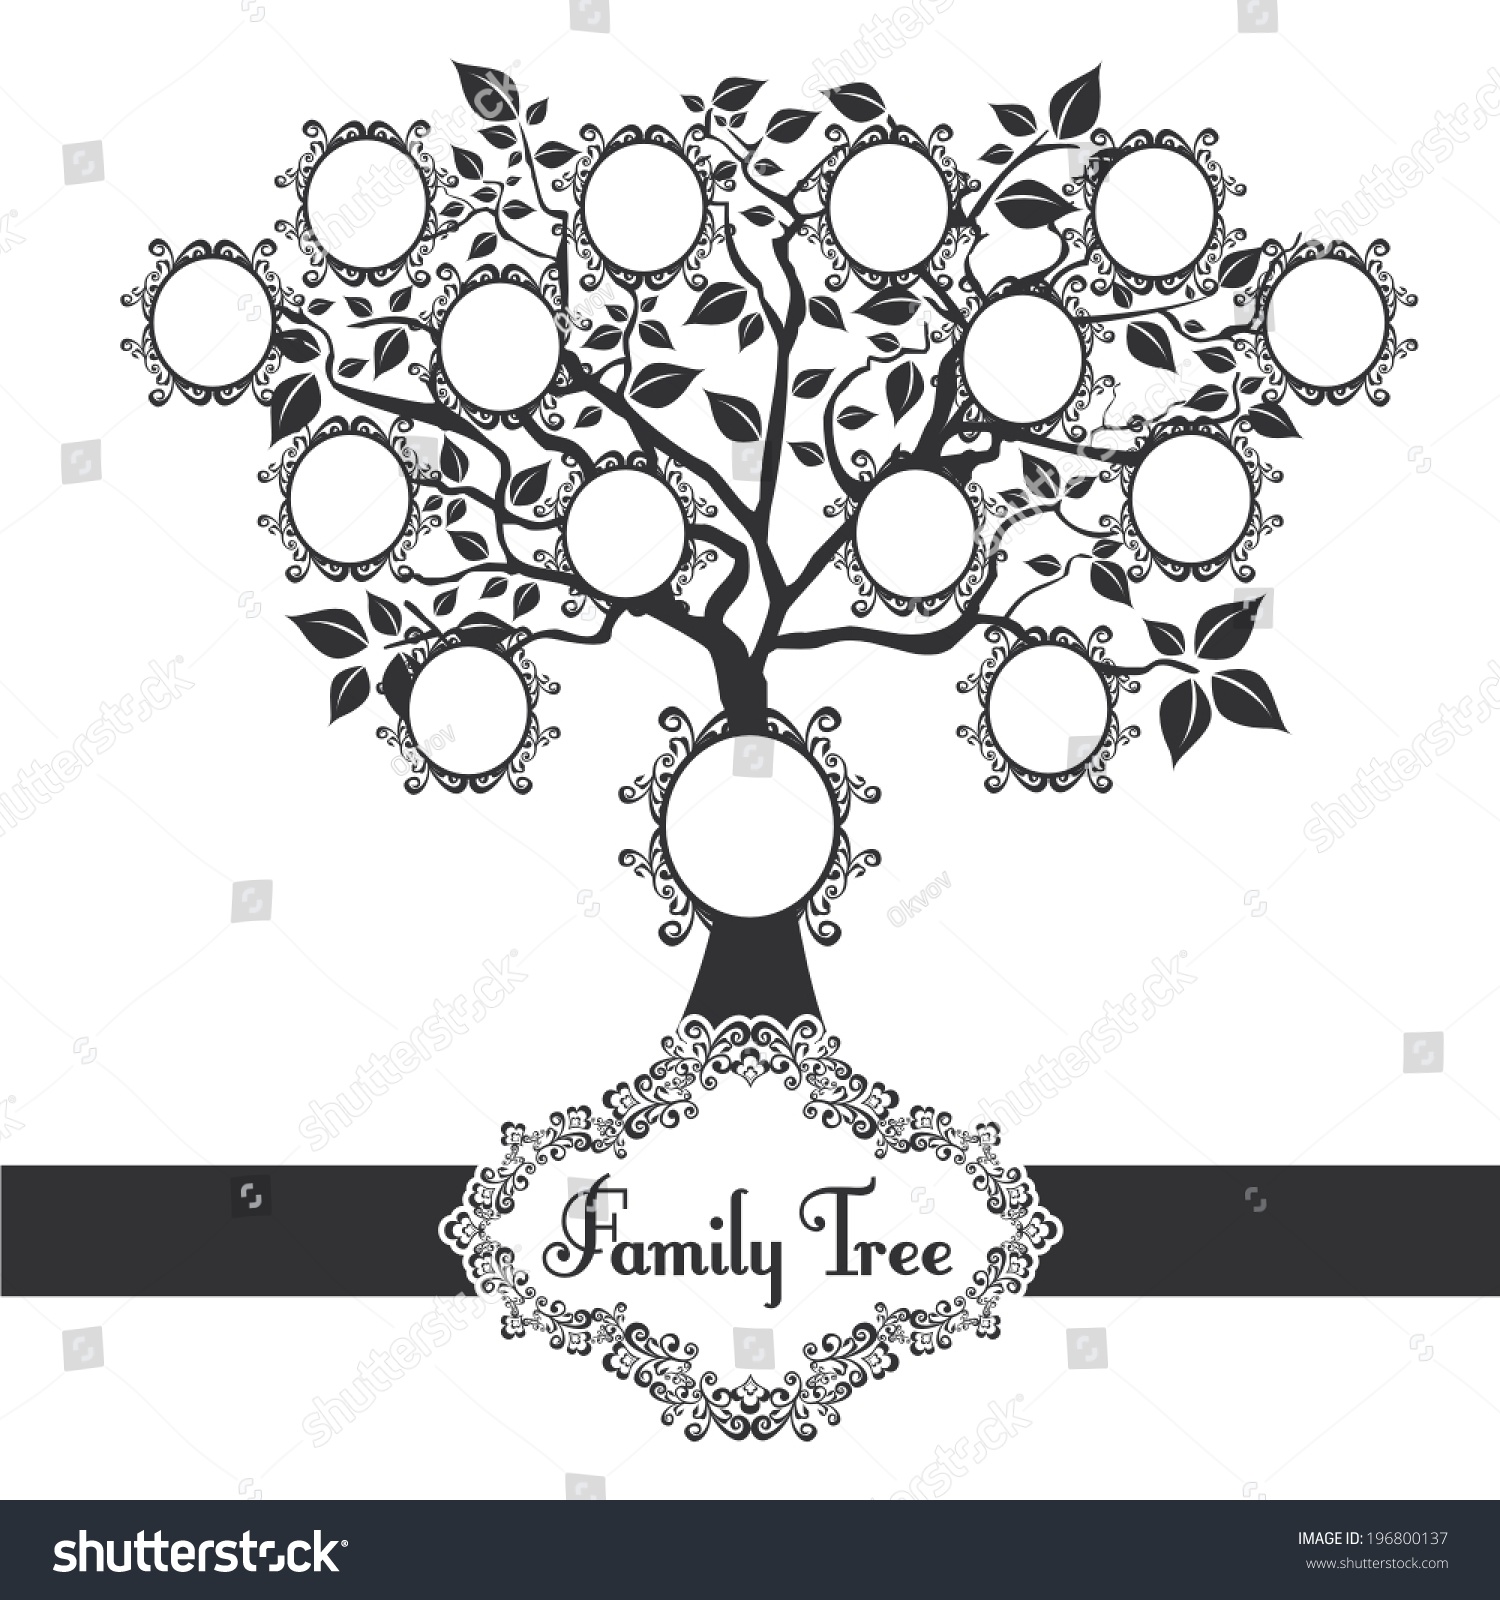 Родословное дерево черно белое